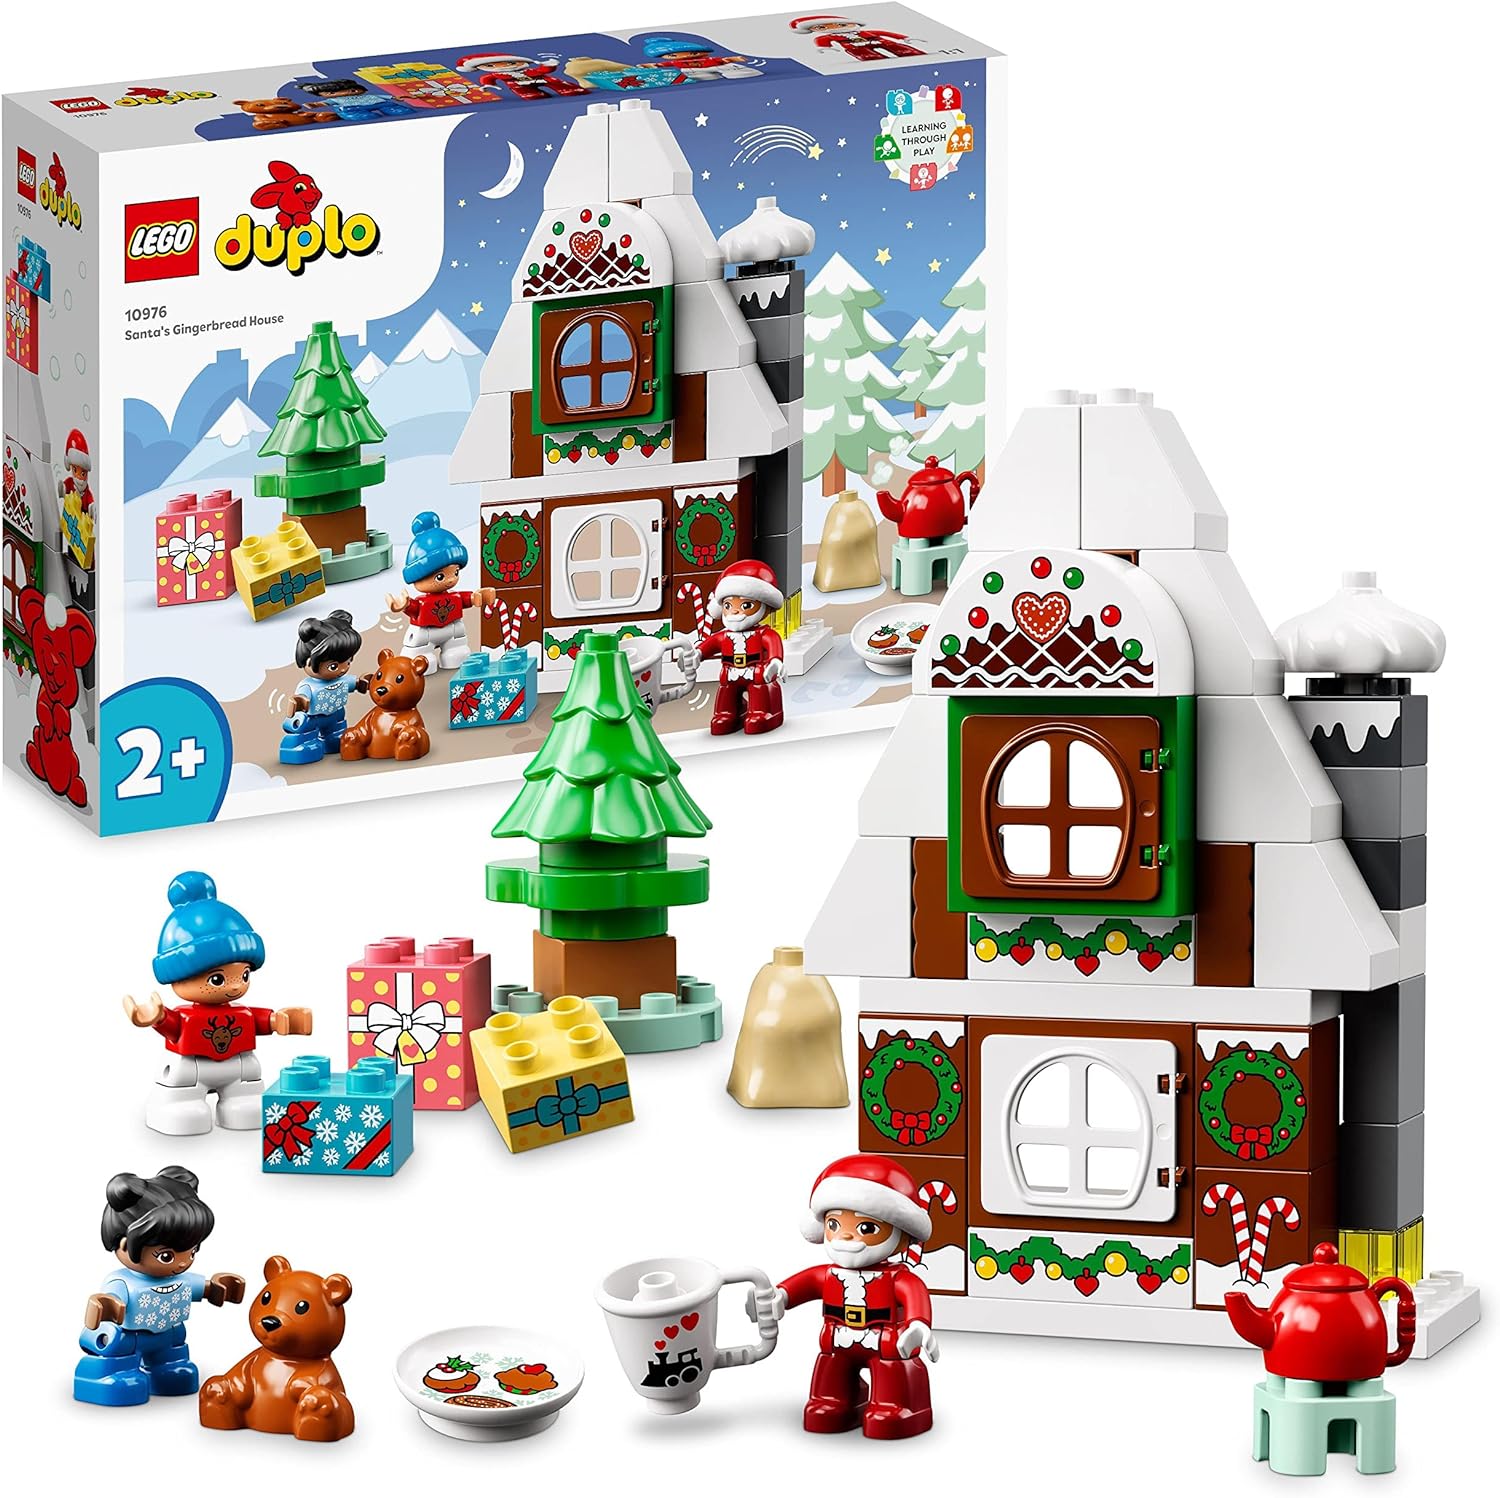 LEGO 10976 DUPLO Lebkuchenhaus mit Weihnachtsmann Figur Weihnachtshaus Spielzeug Bausteine Lernspielzeug